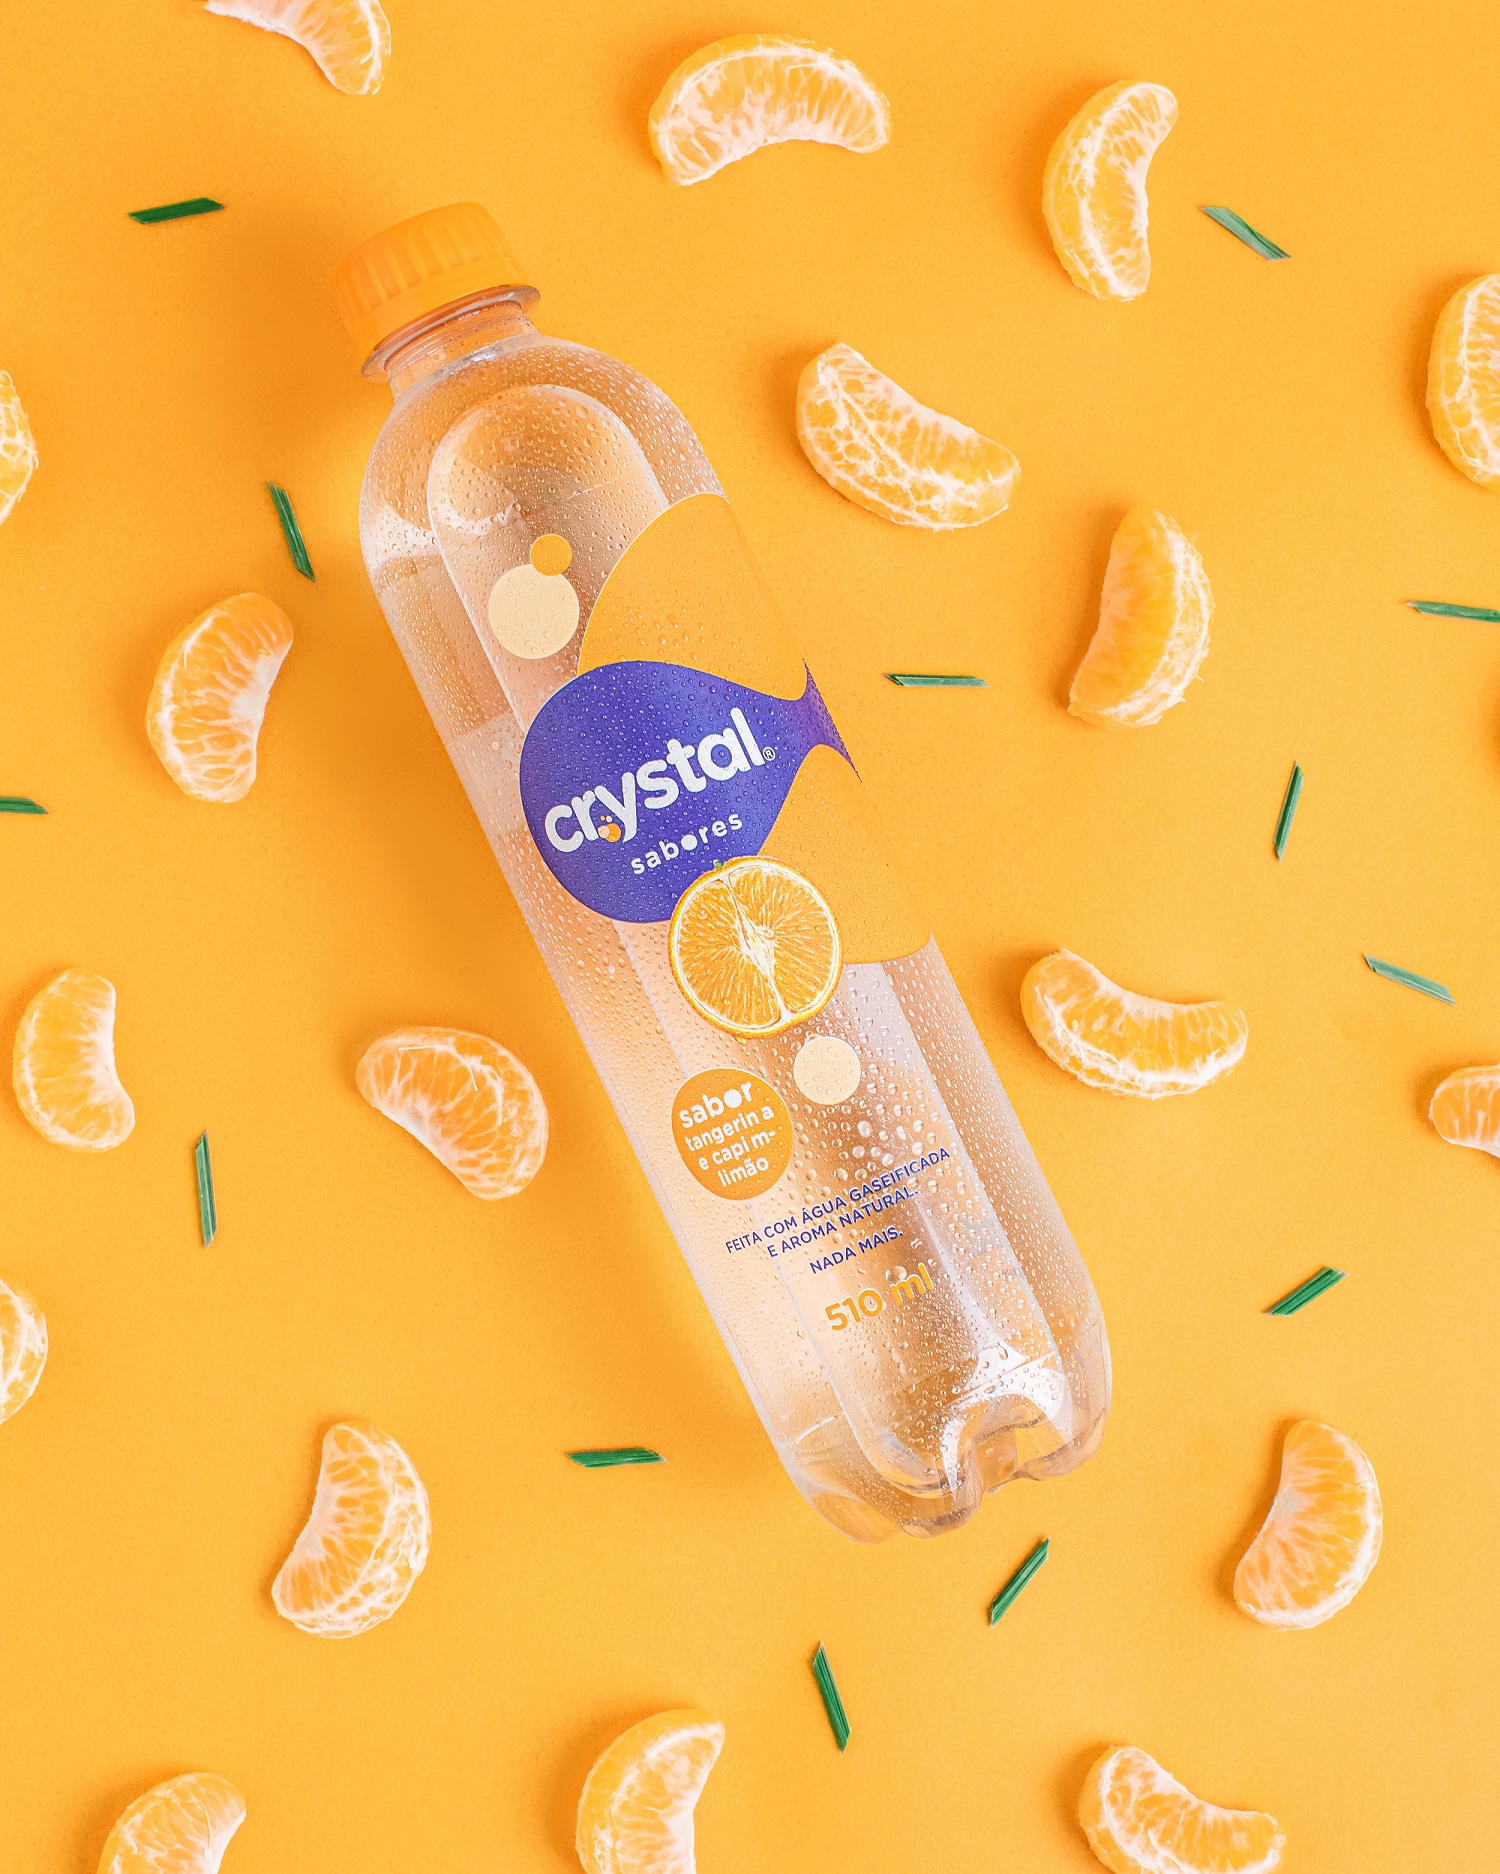 Garrafa de Crystal Sabores sobre um fundo na cor laranja e gomos de tangeria que simbolizam o sabor da água.